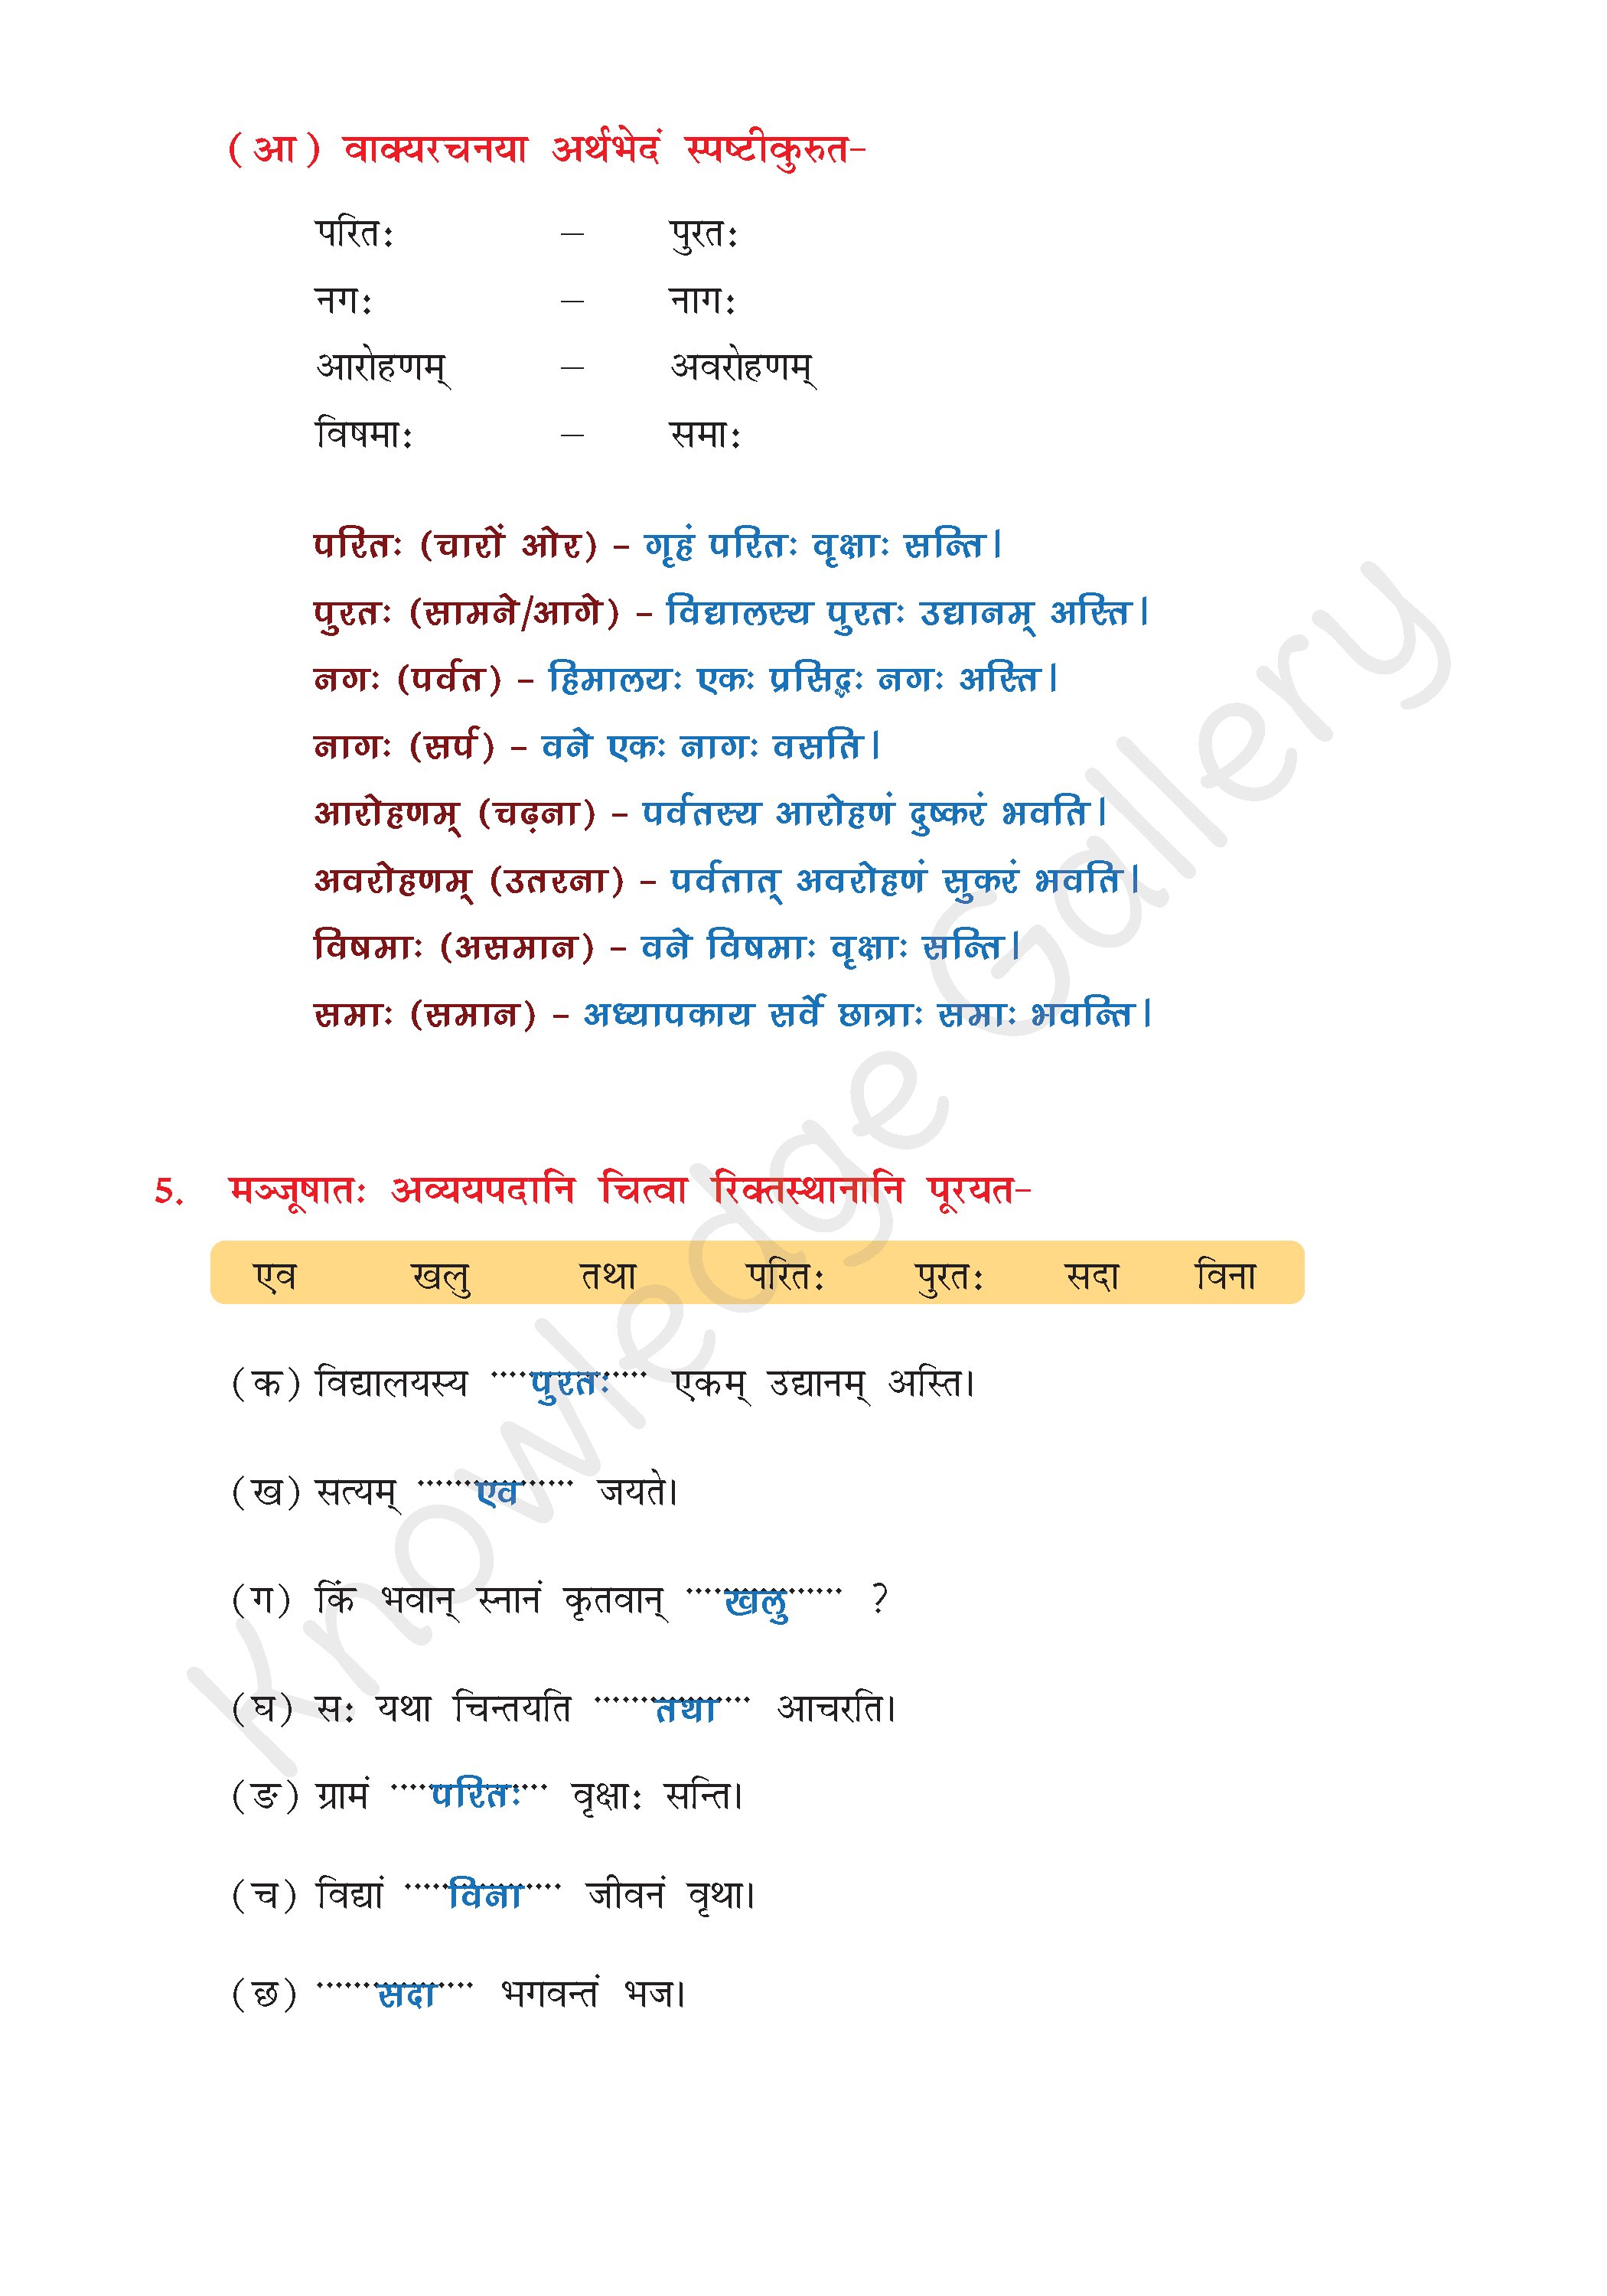 NCERT Solution For Class 8 Sanskrit Chapter 4 part 4